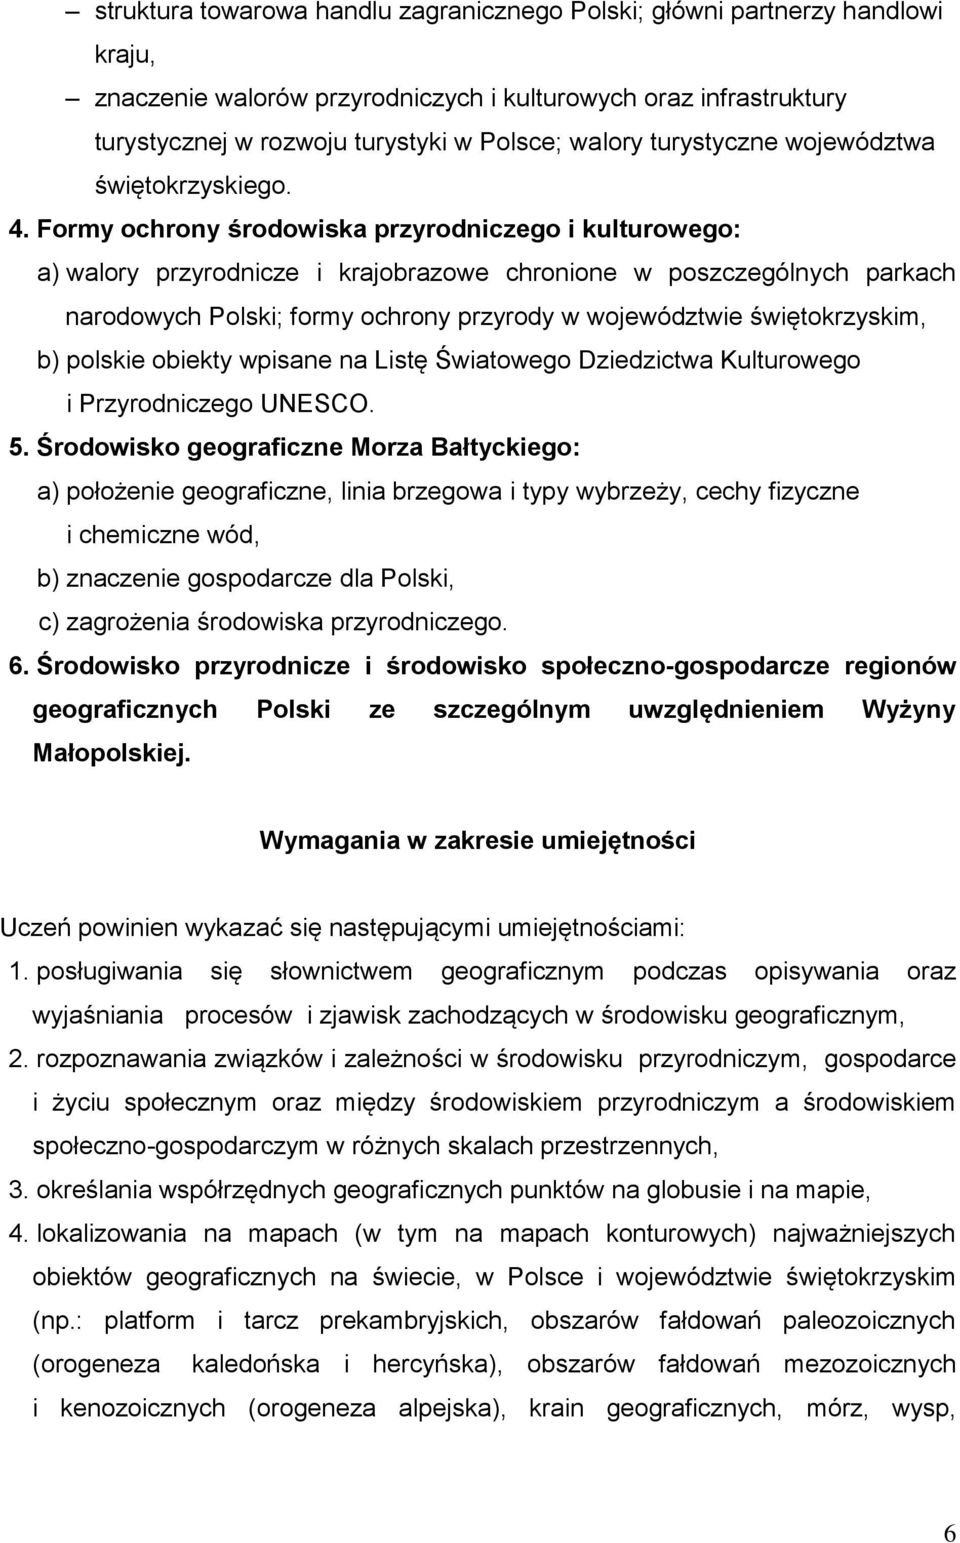 Formy ochrony środowiska przyrodniczego i kulturowego: a) walory przyrodnicze i krajobrazowe chronione w poszczególnych parkach narodowych Polski; formy ochrony przyrody w województwie